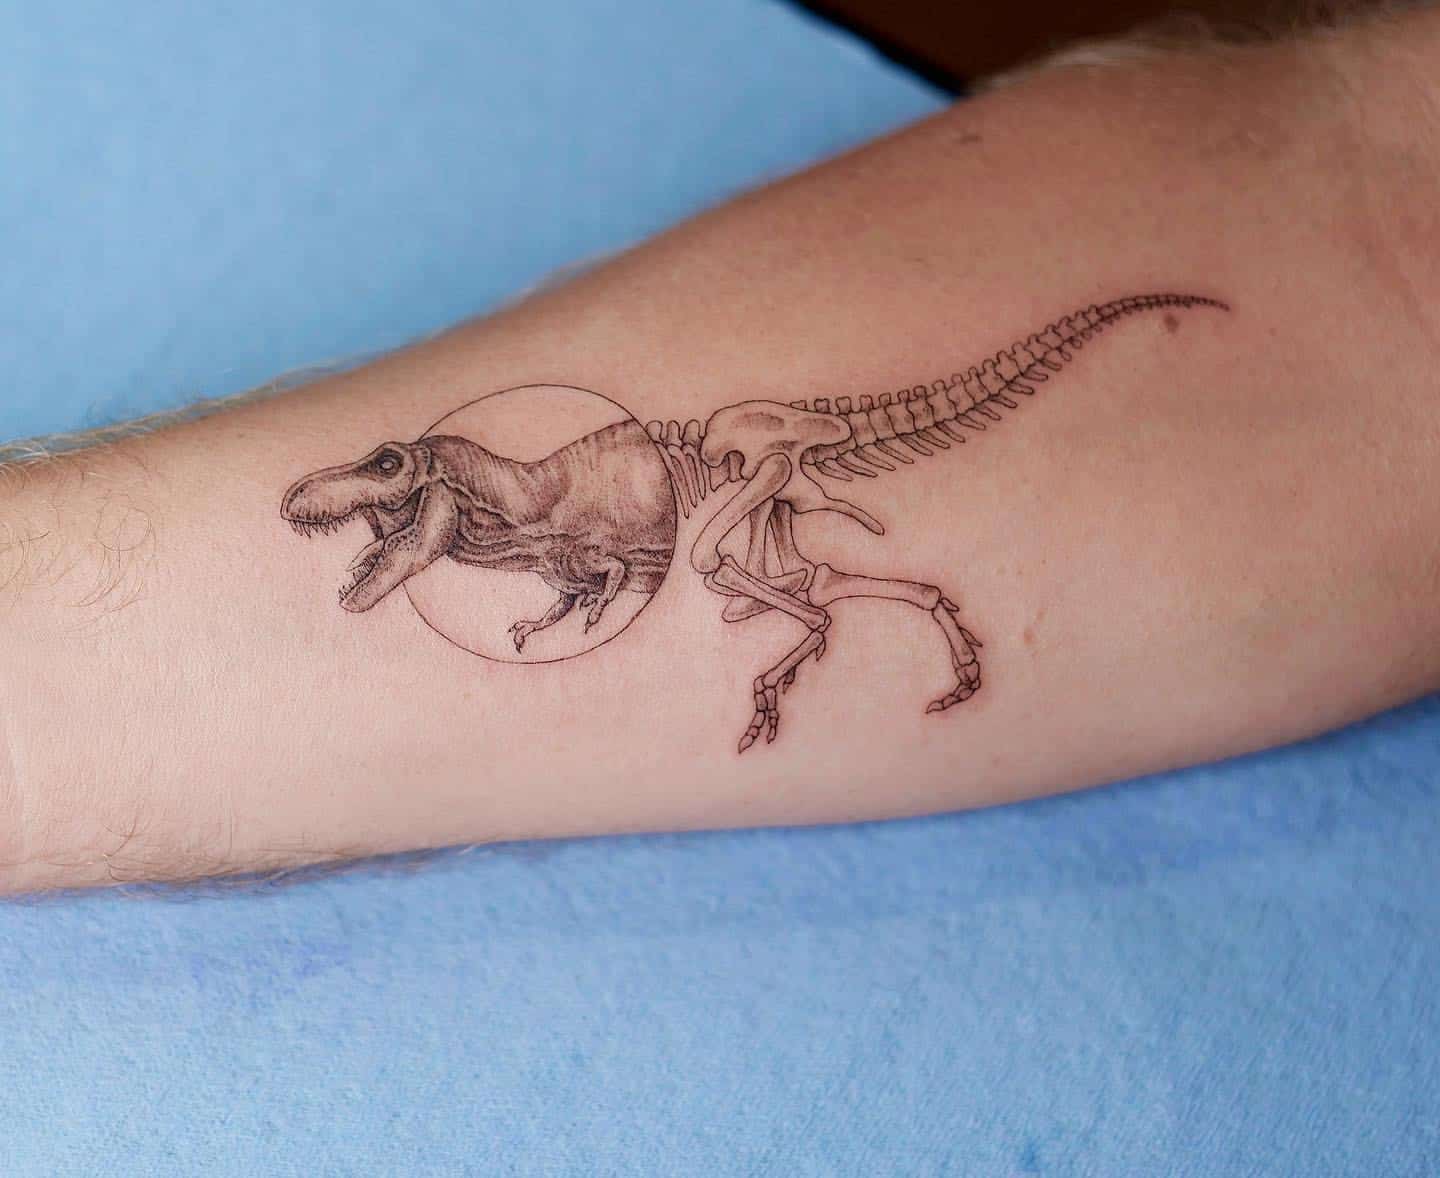 50 Velociraptor Tattoo Designs For Men  Dinosaur Ink Ideas